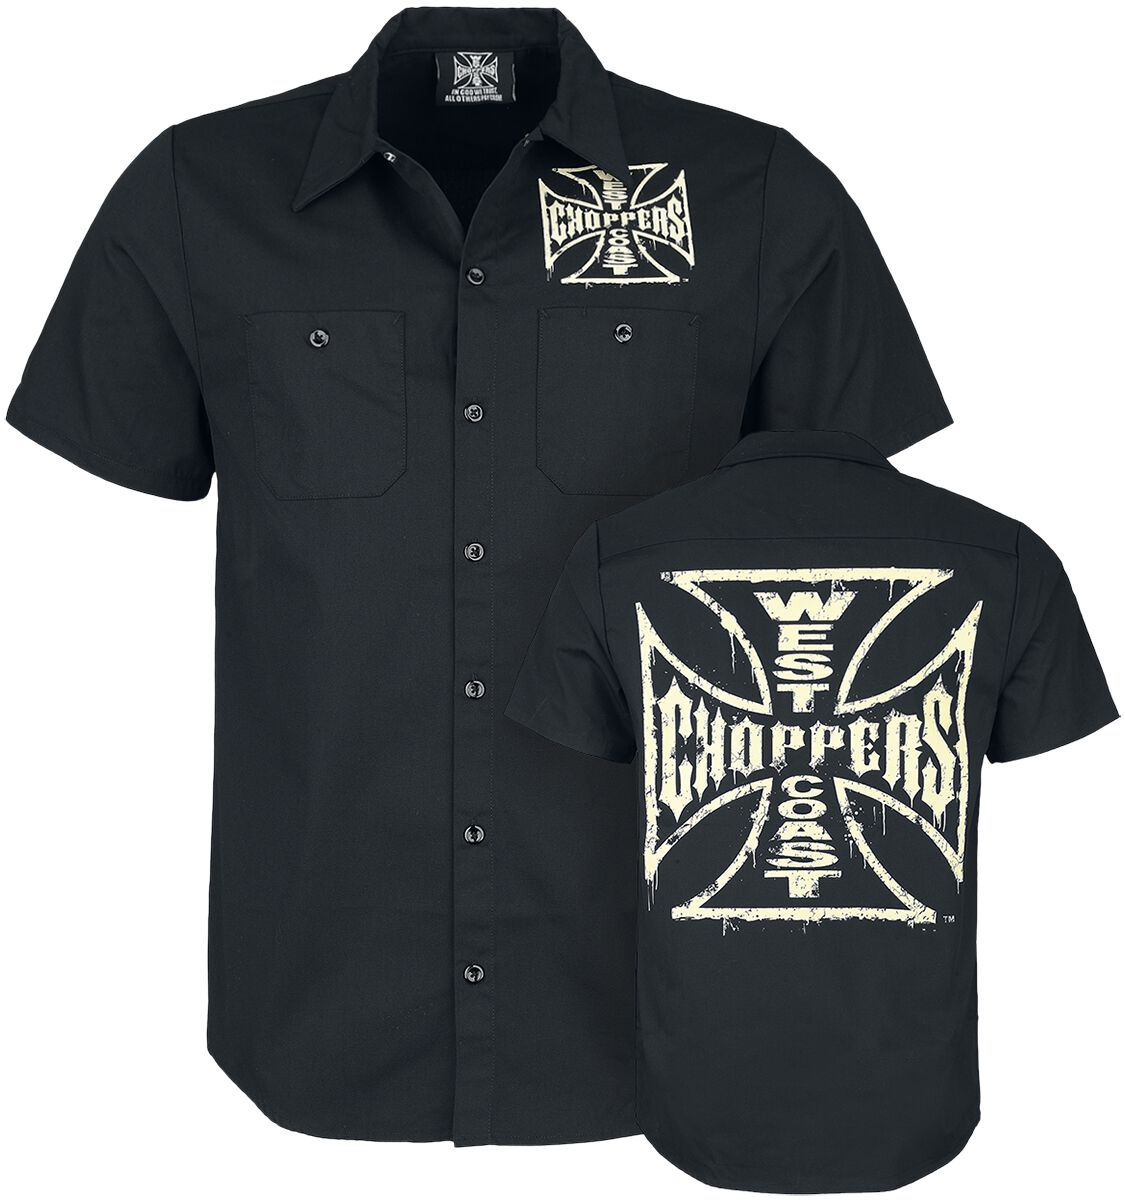 West Coast Choppers Kurzarmhemd - Distressed OG Logo - S bis 3XL - für Männer - Größe 3XL - schwarz